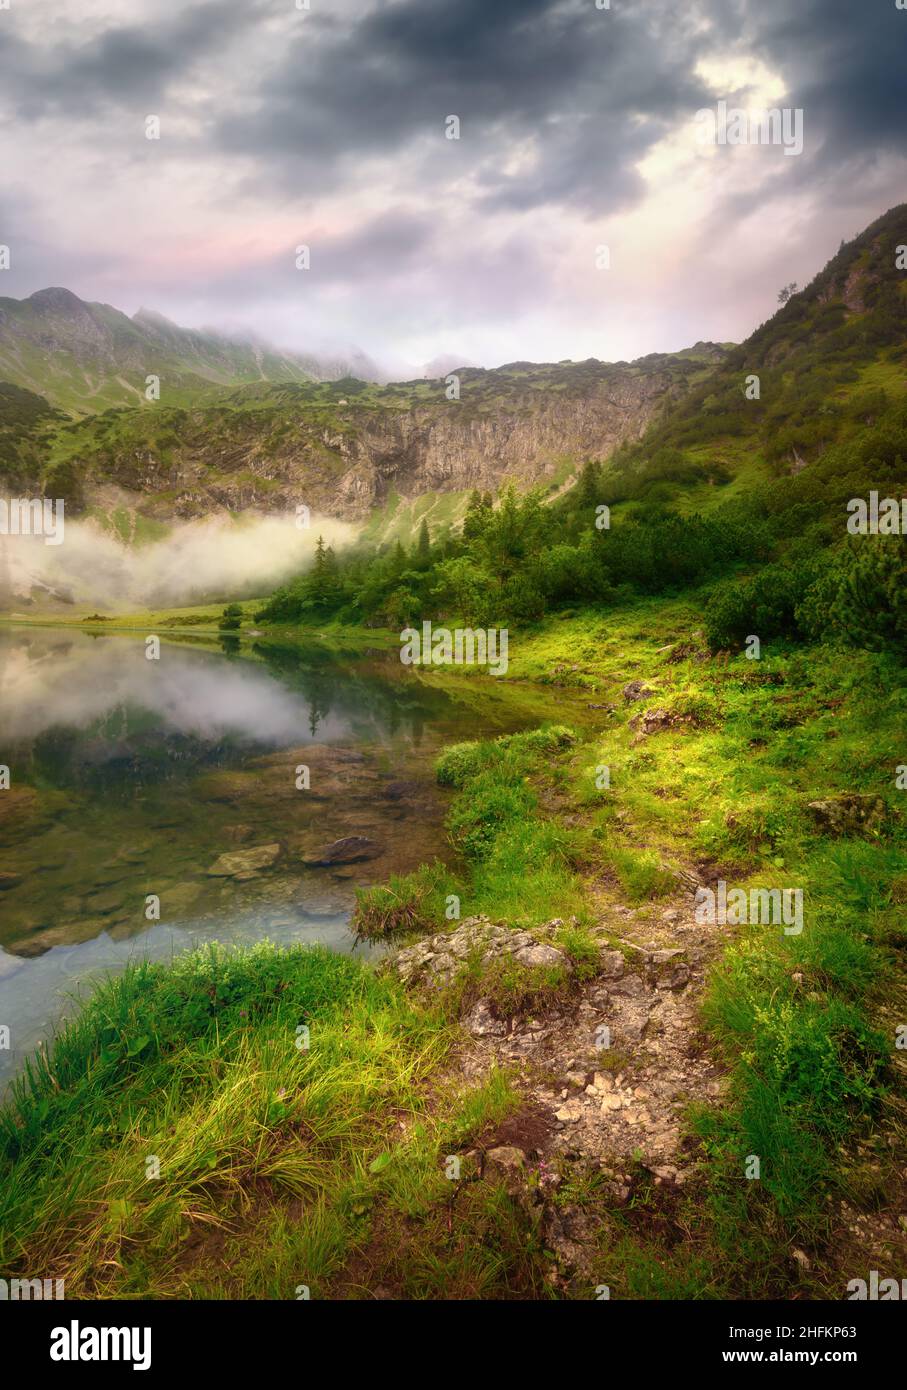 Magnifique sentier au bord d'un lac de montagne dans une lumière spectaculaire avec des nuages sombres Banque D'Images